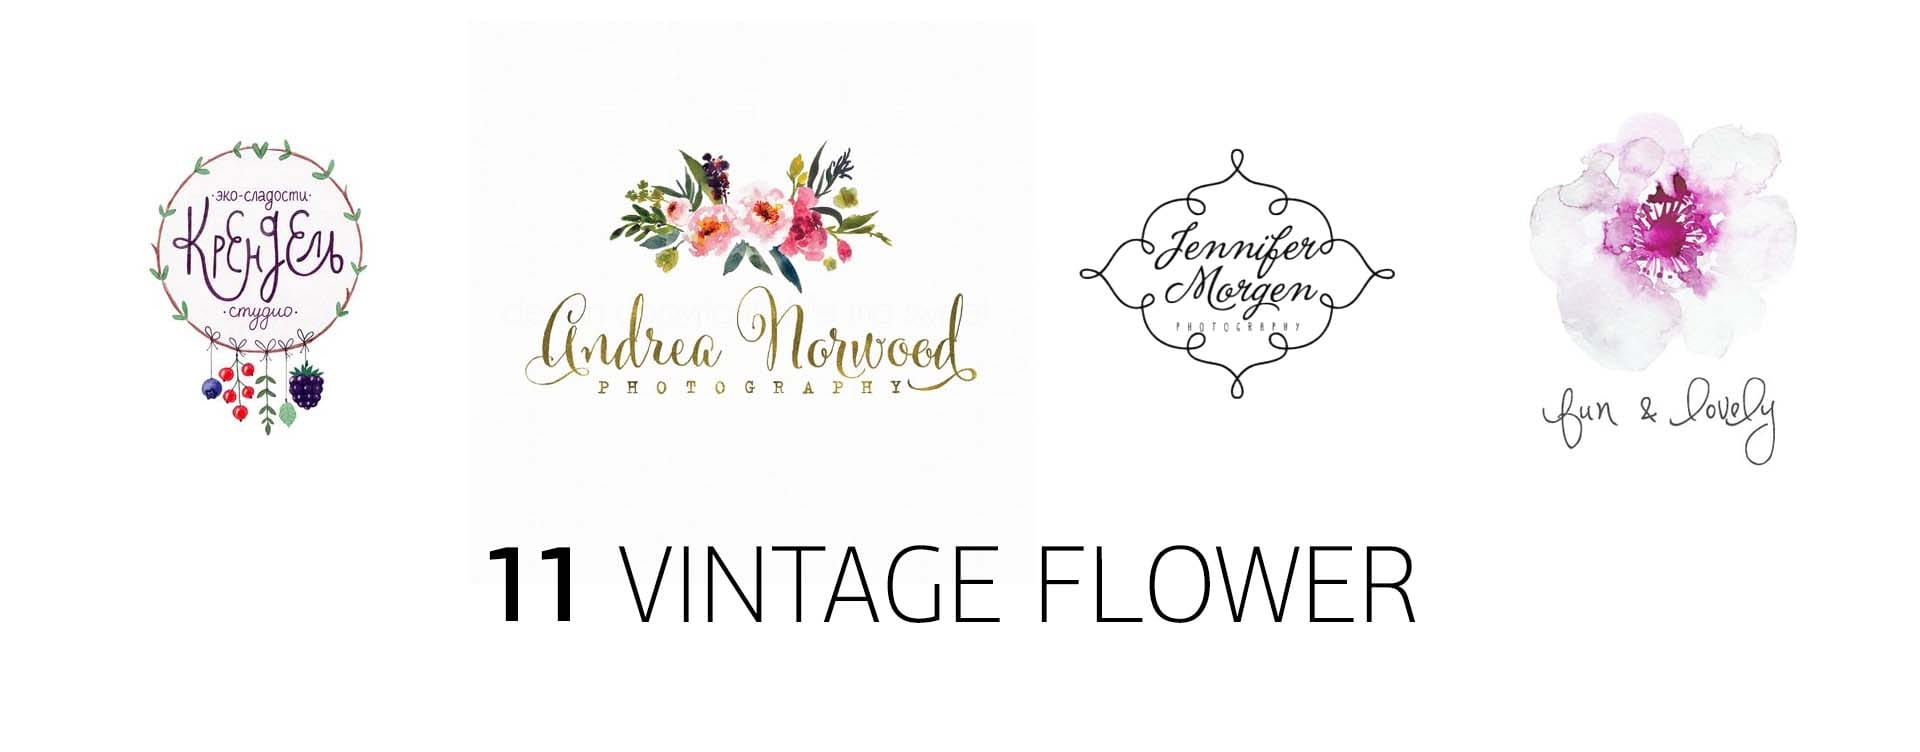 винтажный, цветочный стиль логотипа, vintage, floral logo style